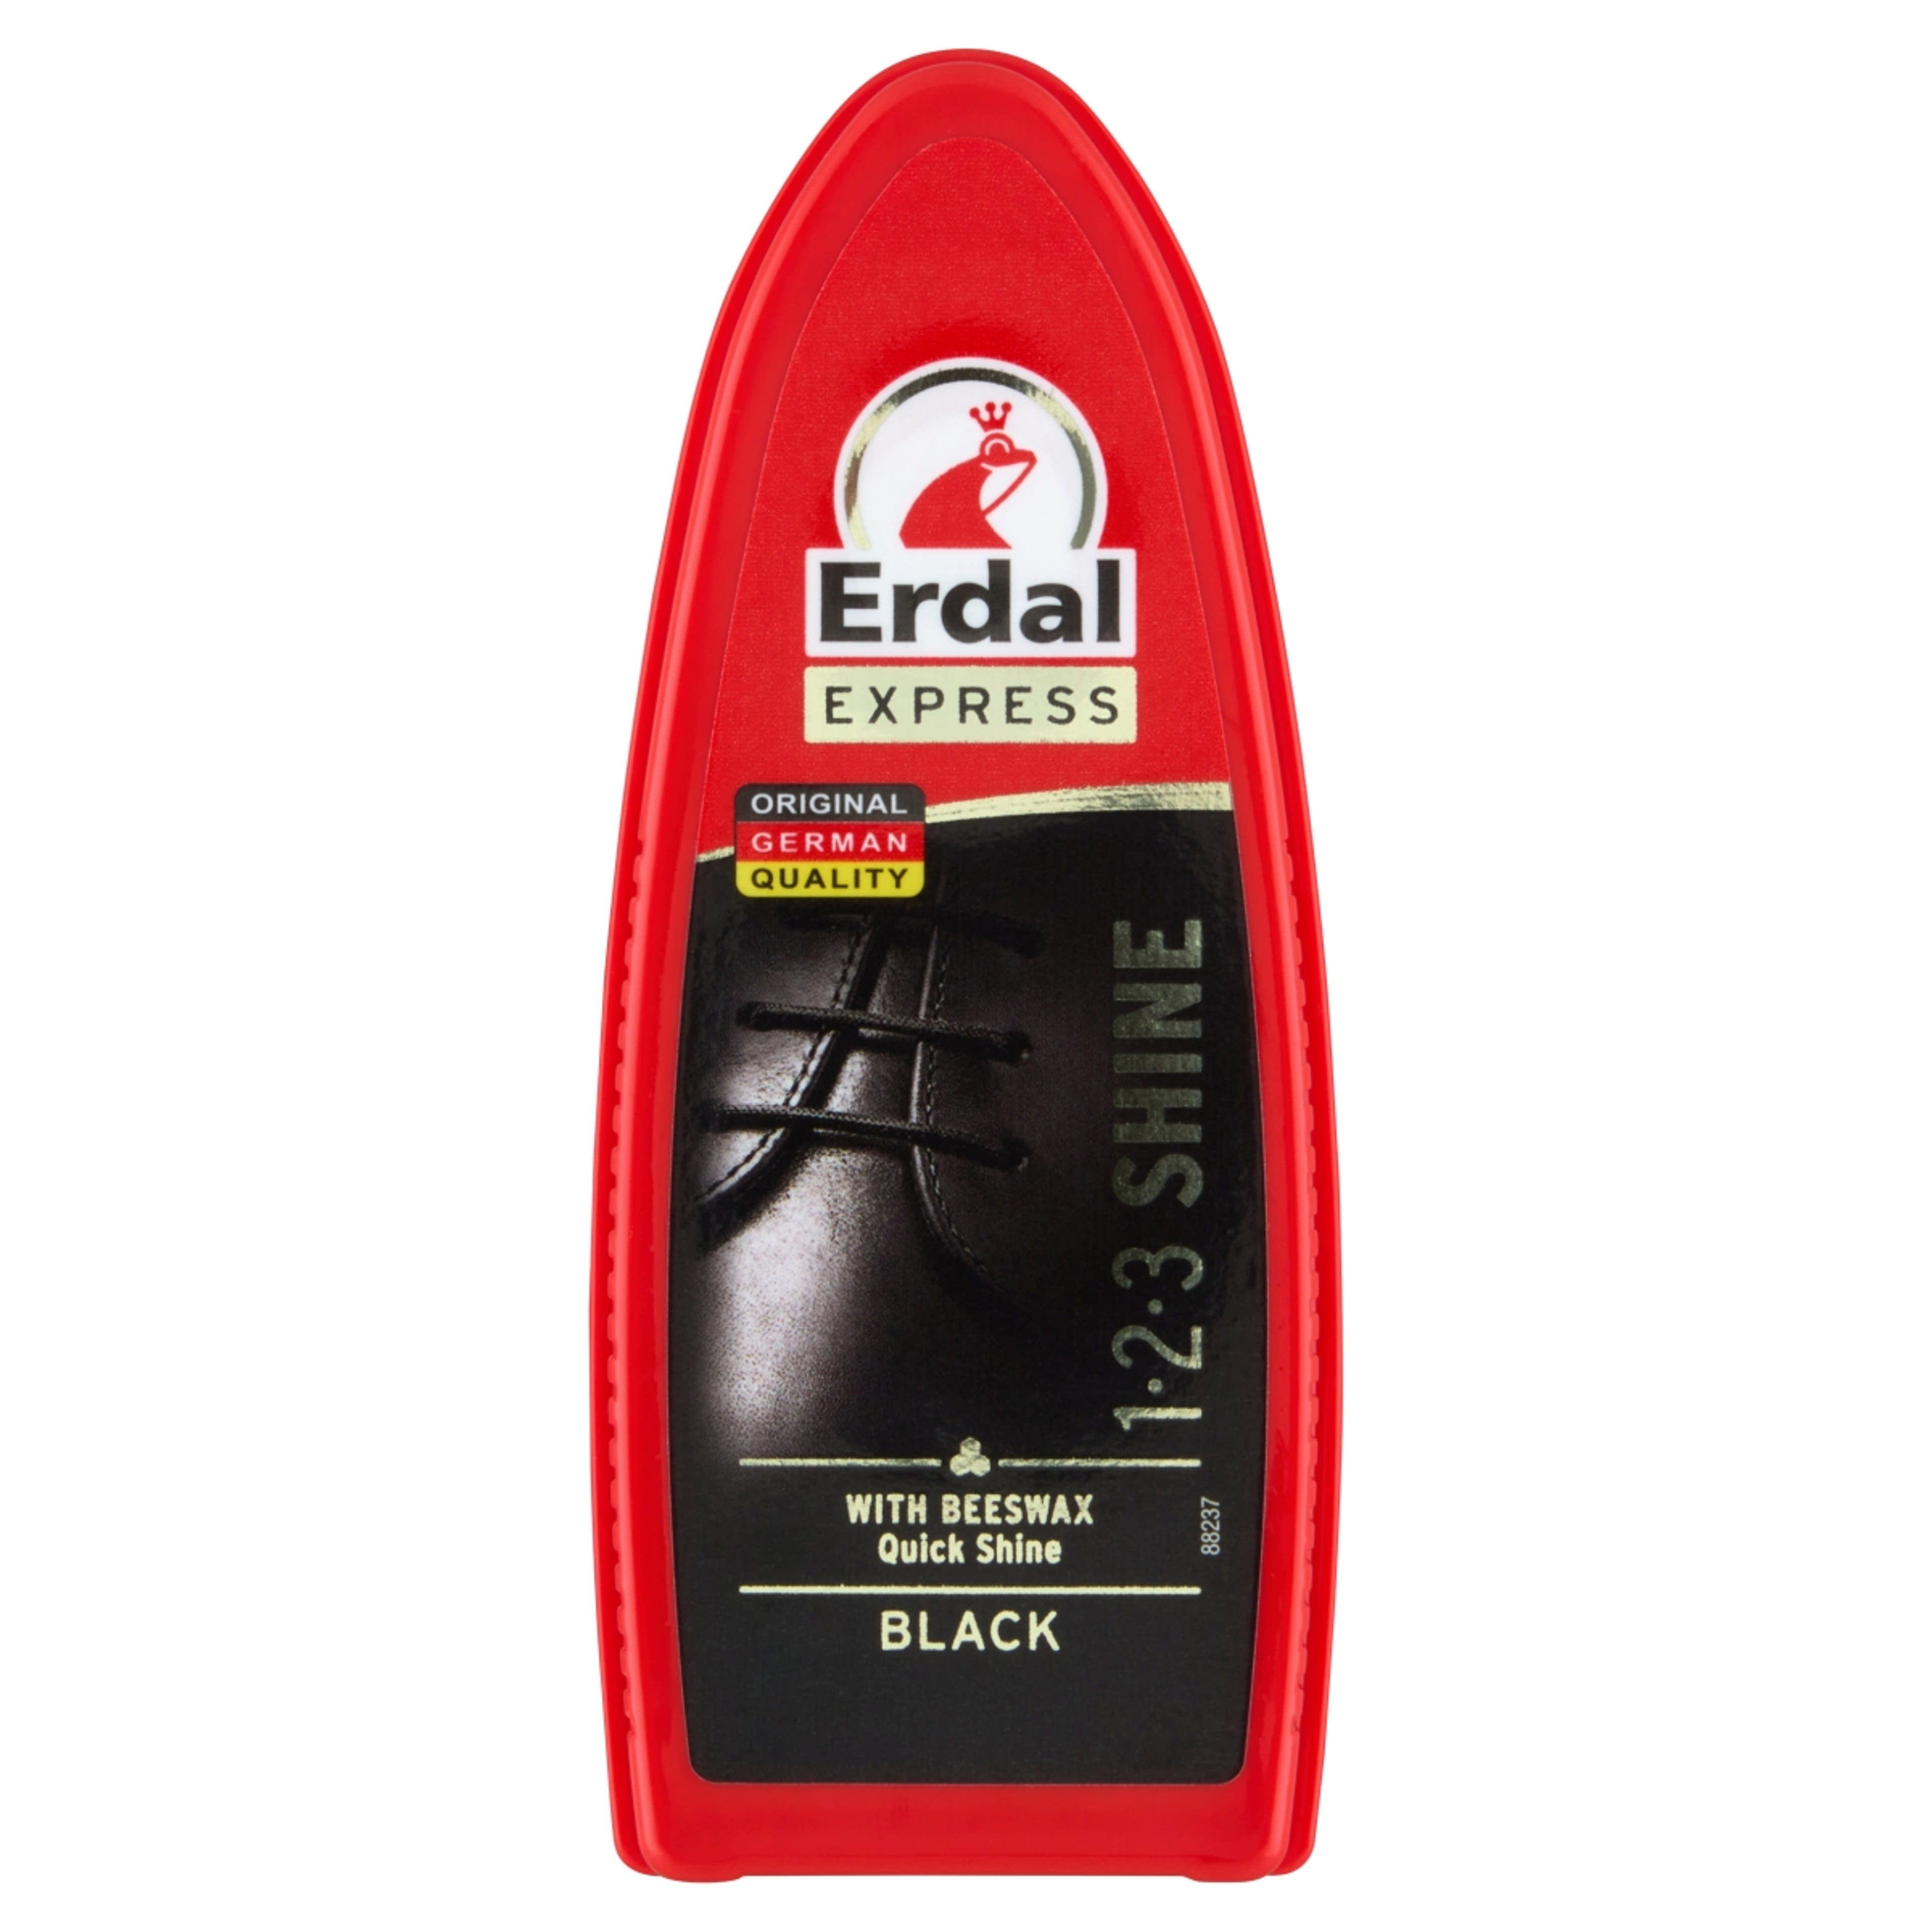 Erdal Express 1-2-3 gyorsfény cipőfényező szivacs - 1 db